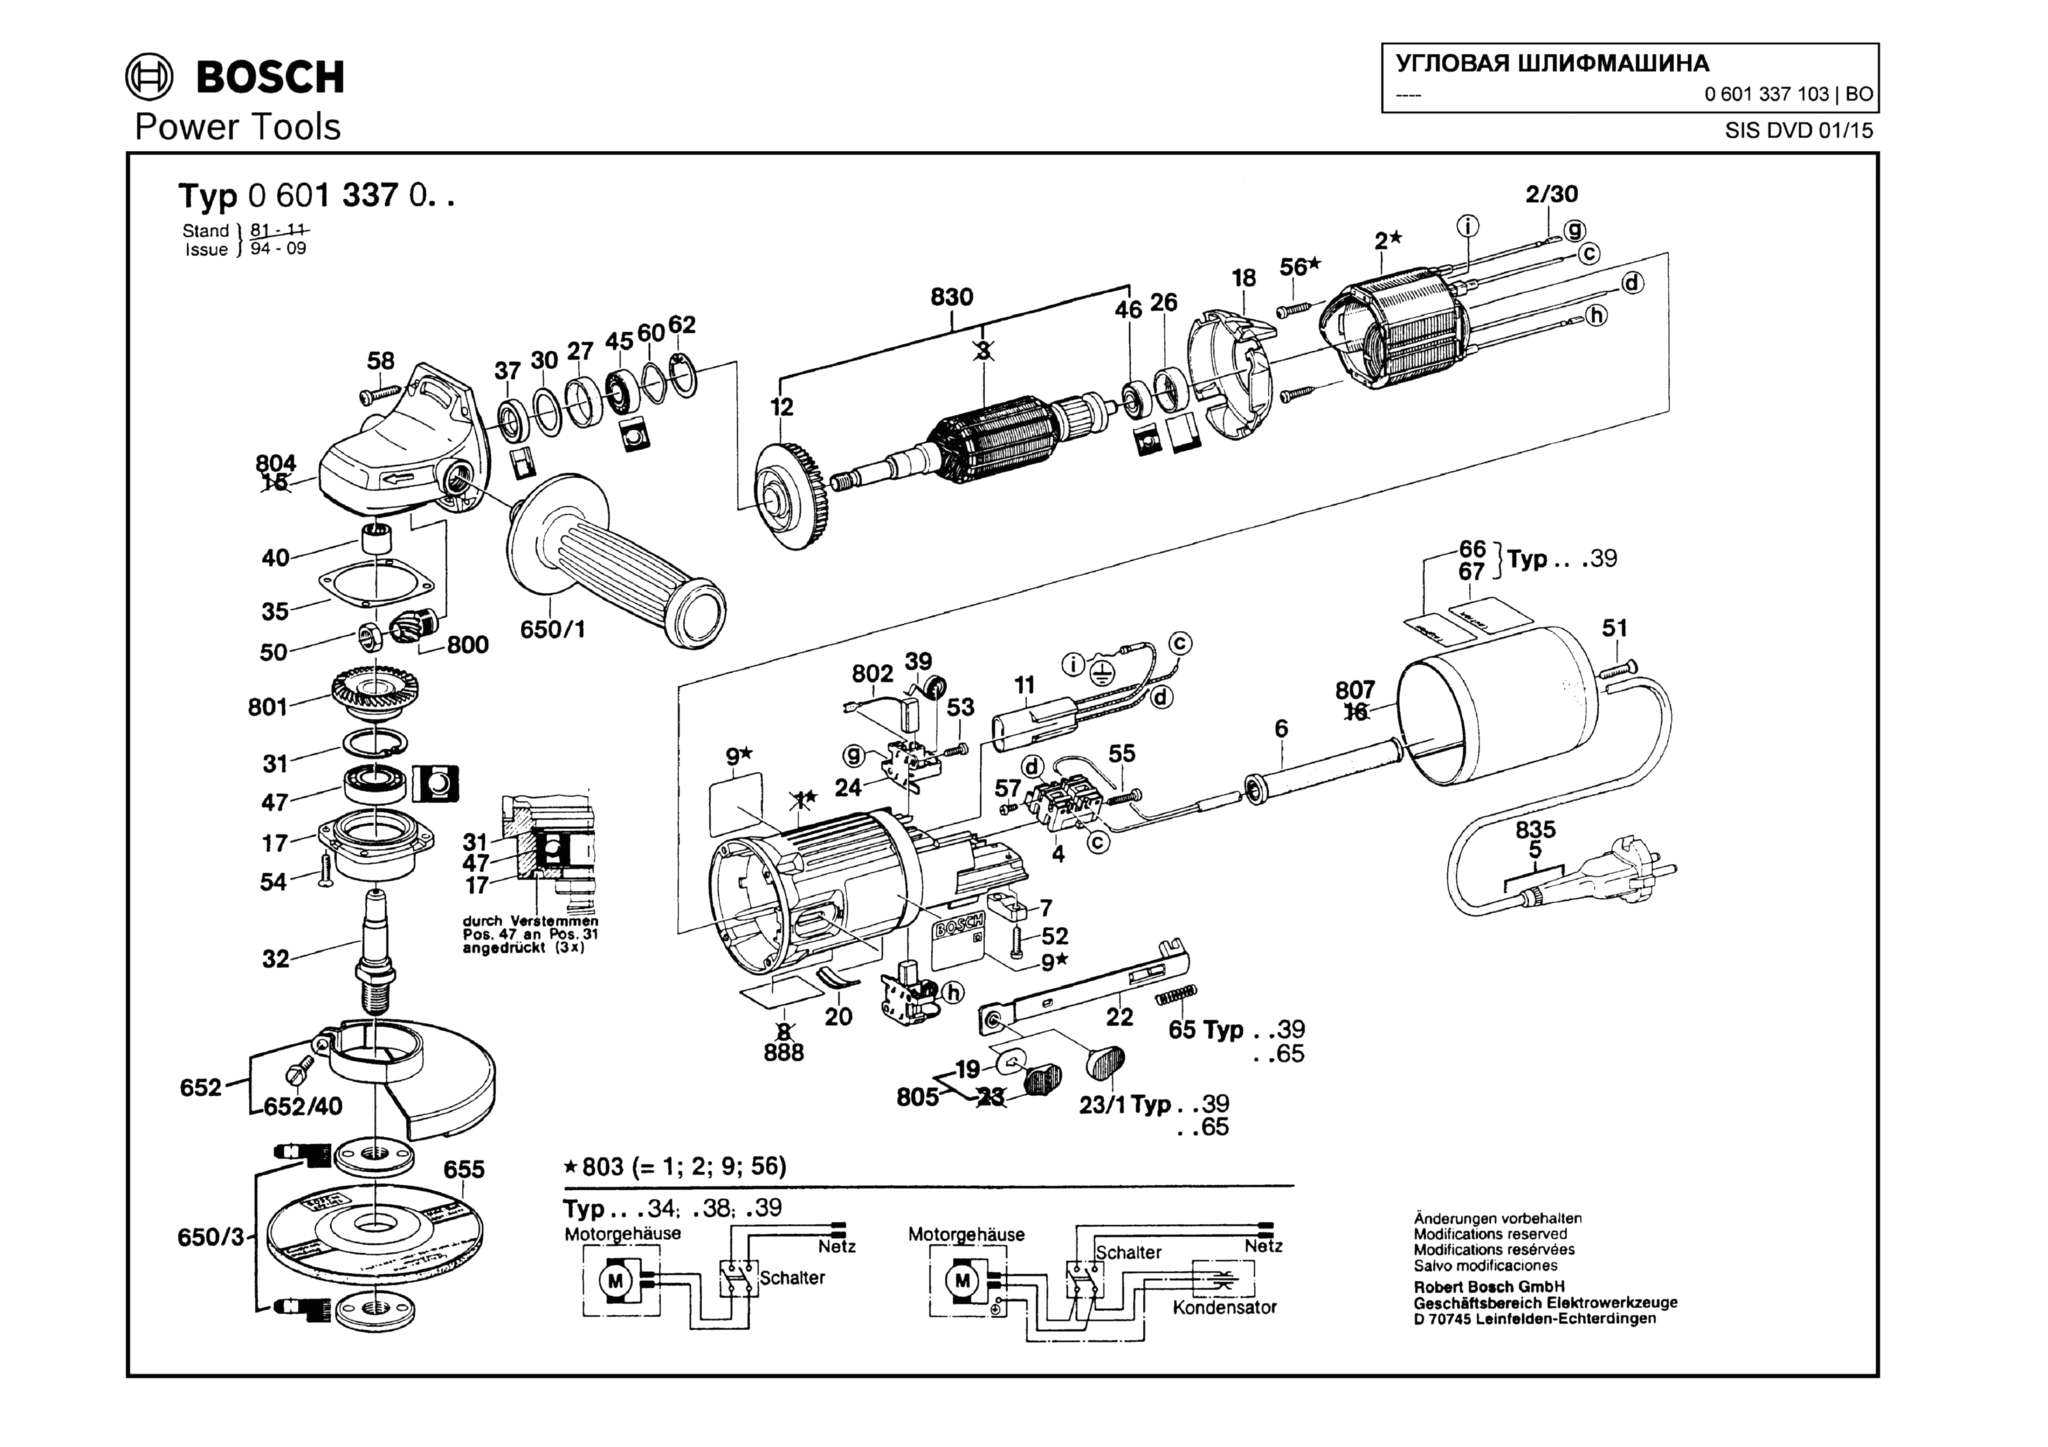 Запчасти, схема и деталировка Bosch (ТИП 0601337103)